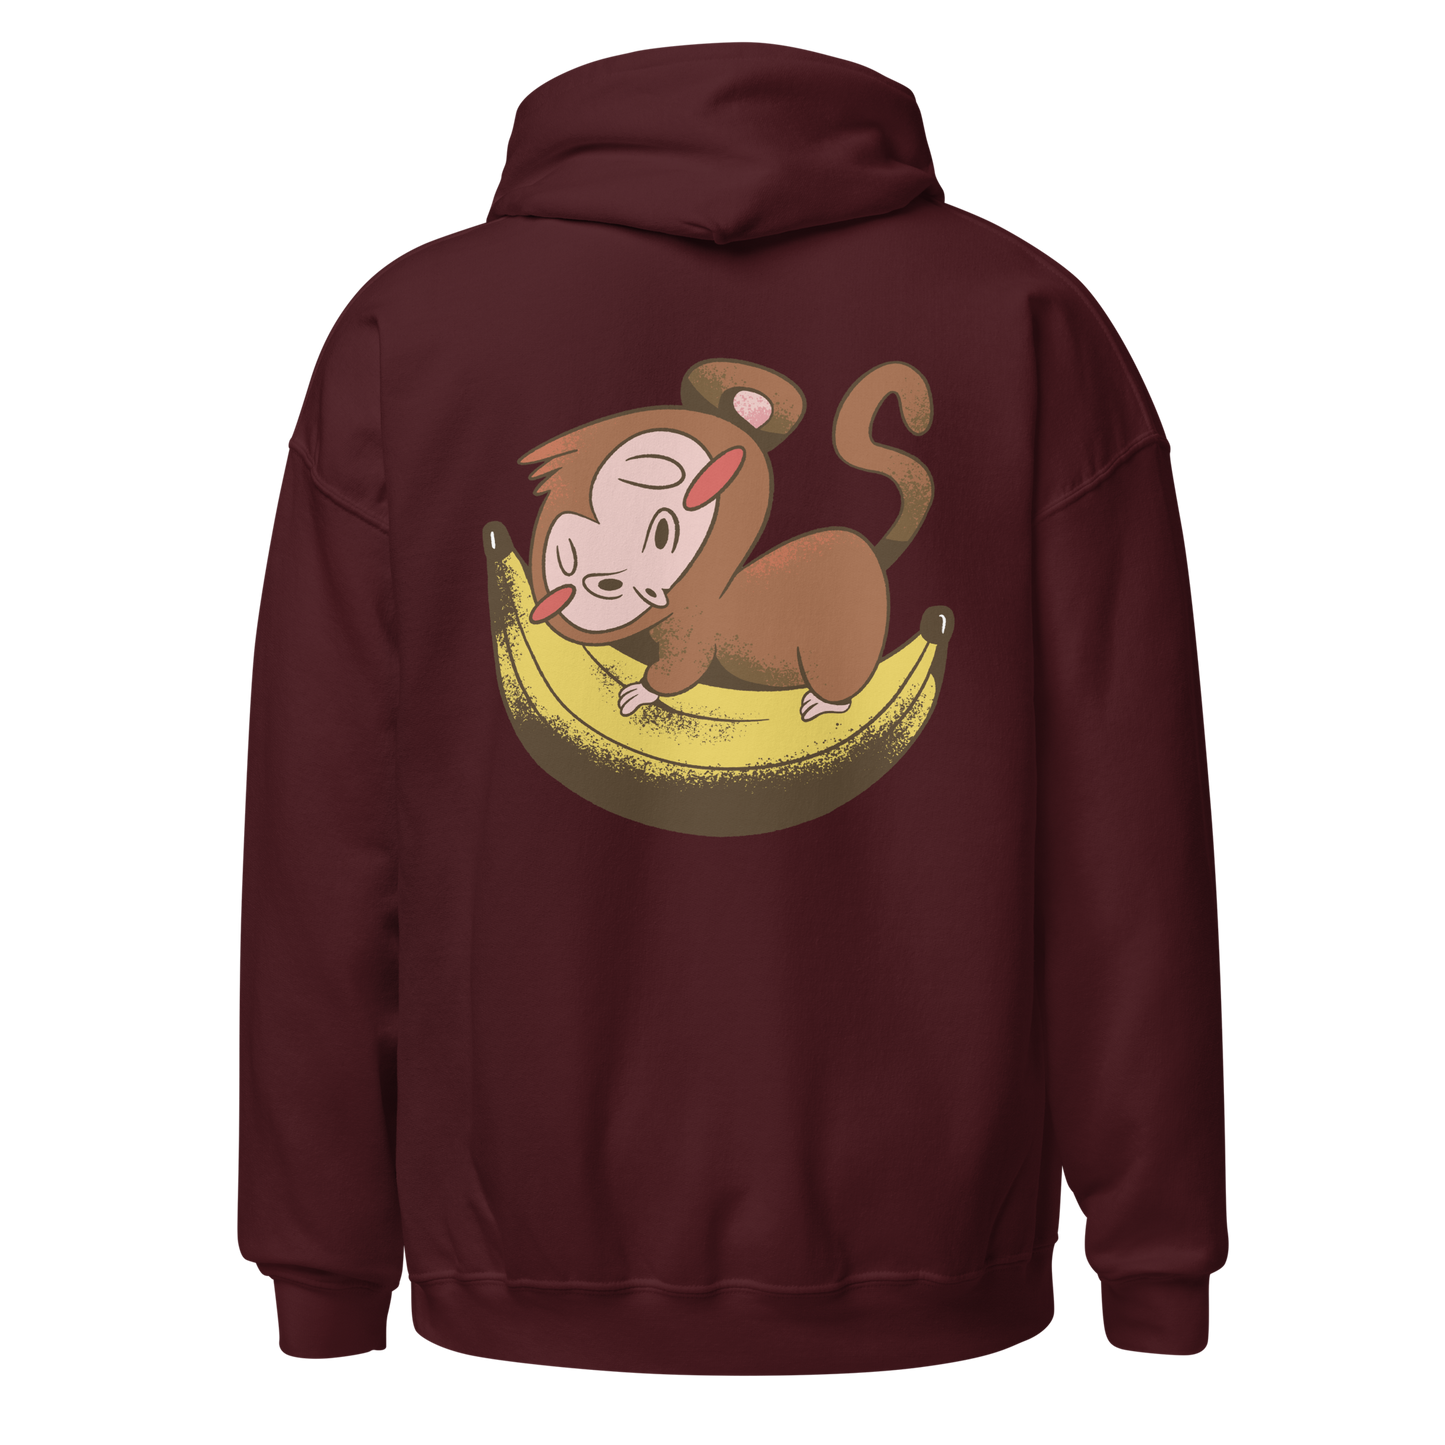 Monkey sleeping on banana | Unisex Hoodie